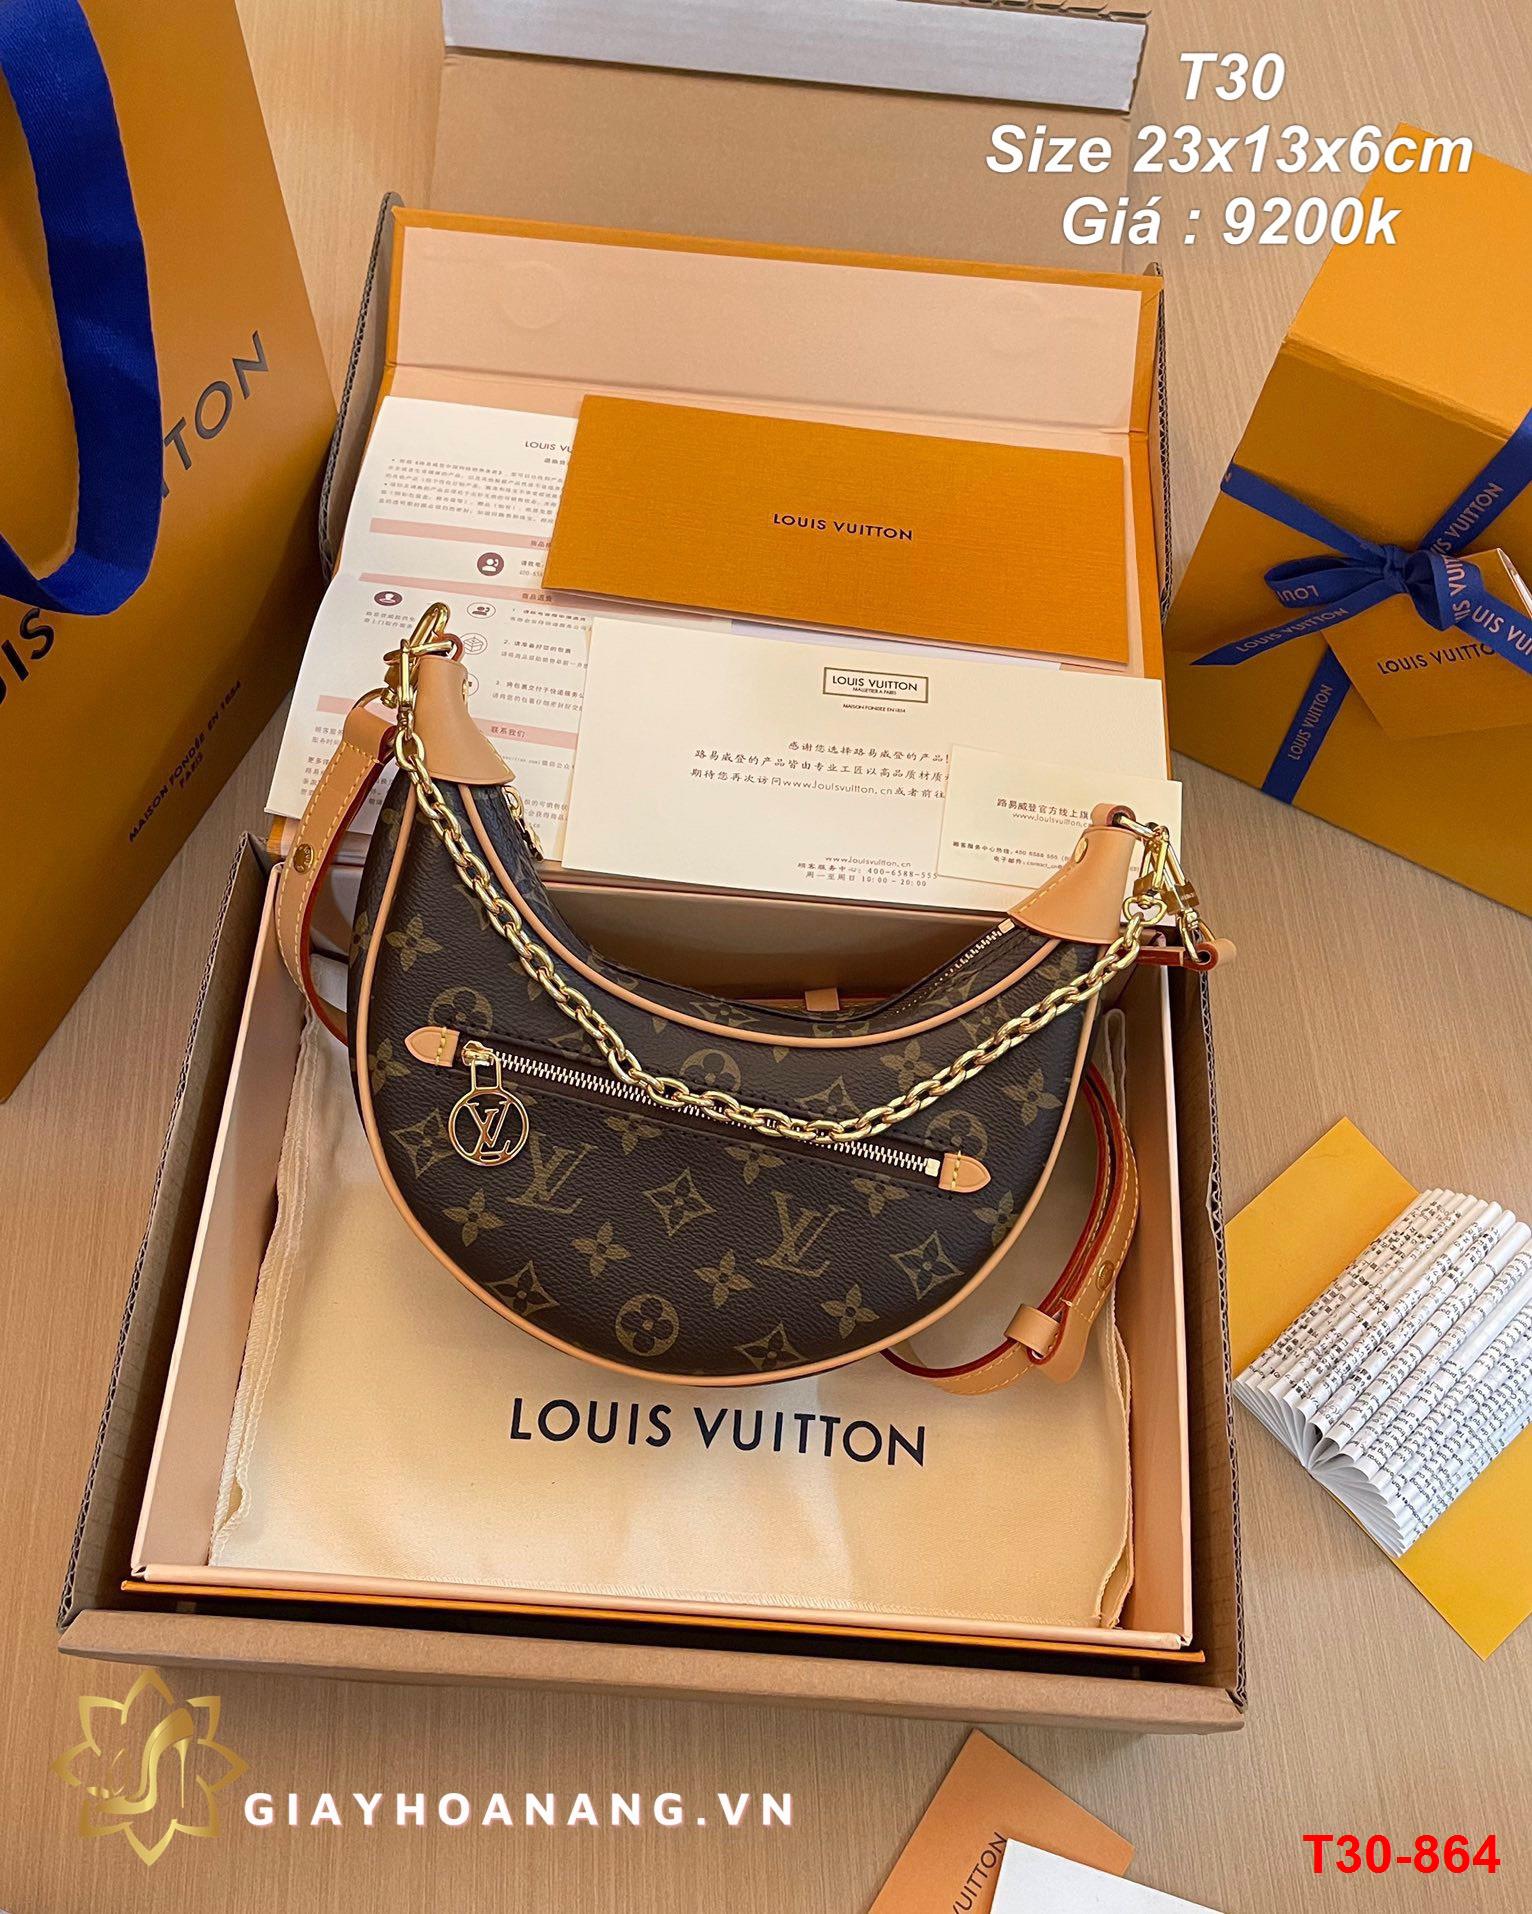 T30-864 Louis Vuitton túi size 23cm siêu cấp